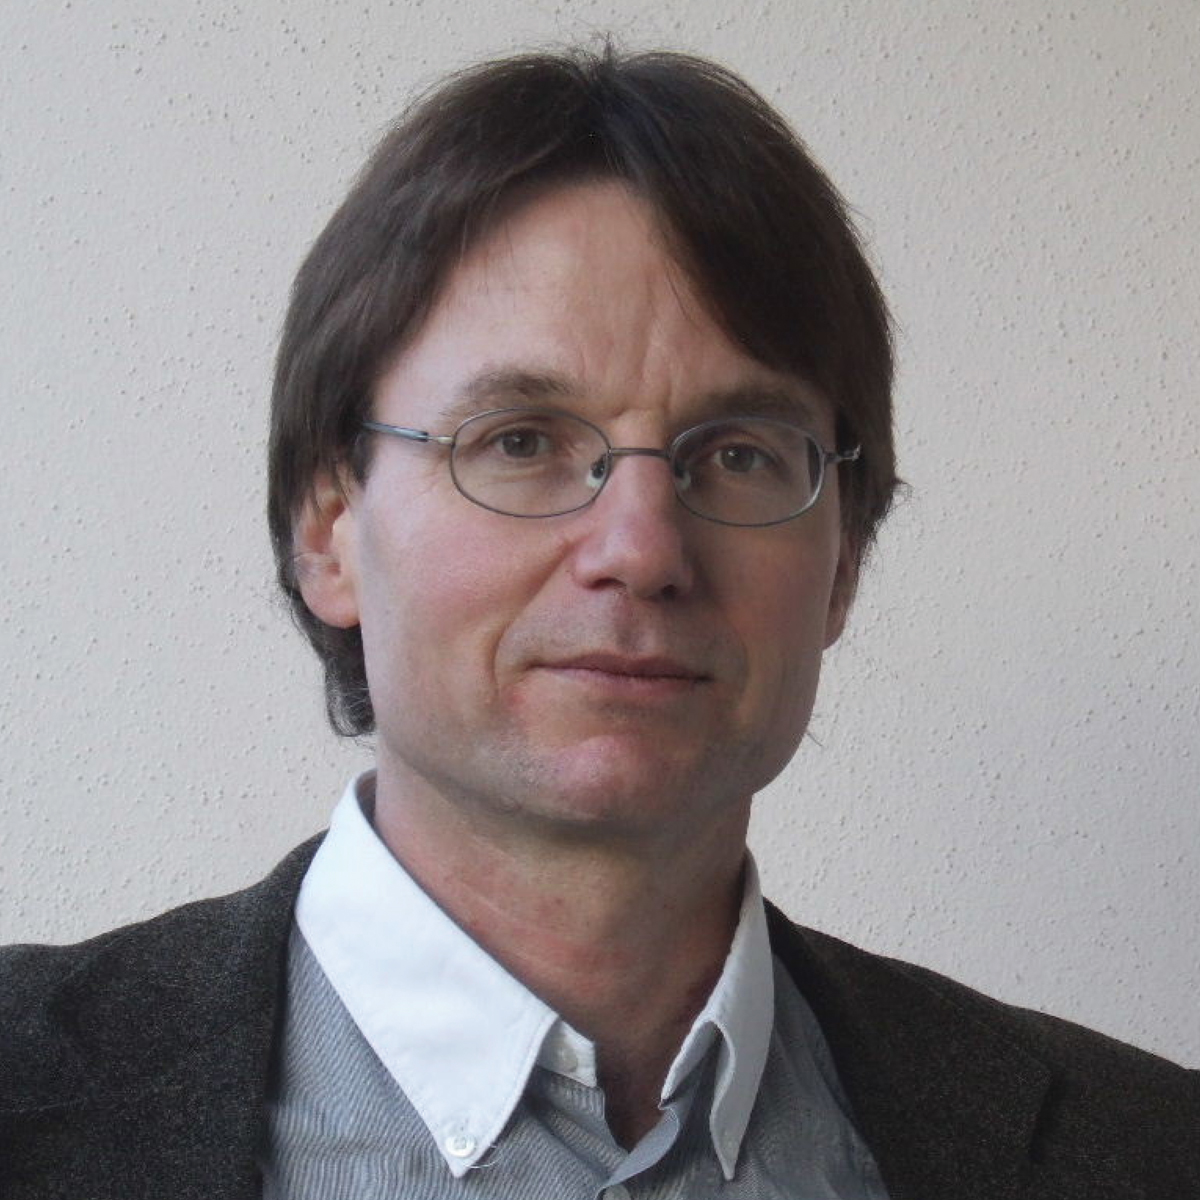 Professor Stefan Sauter